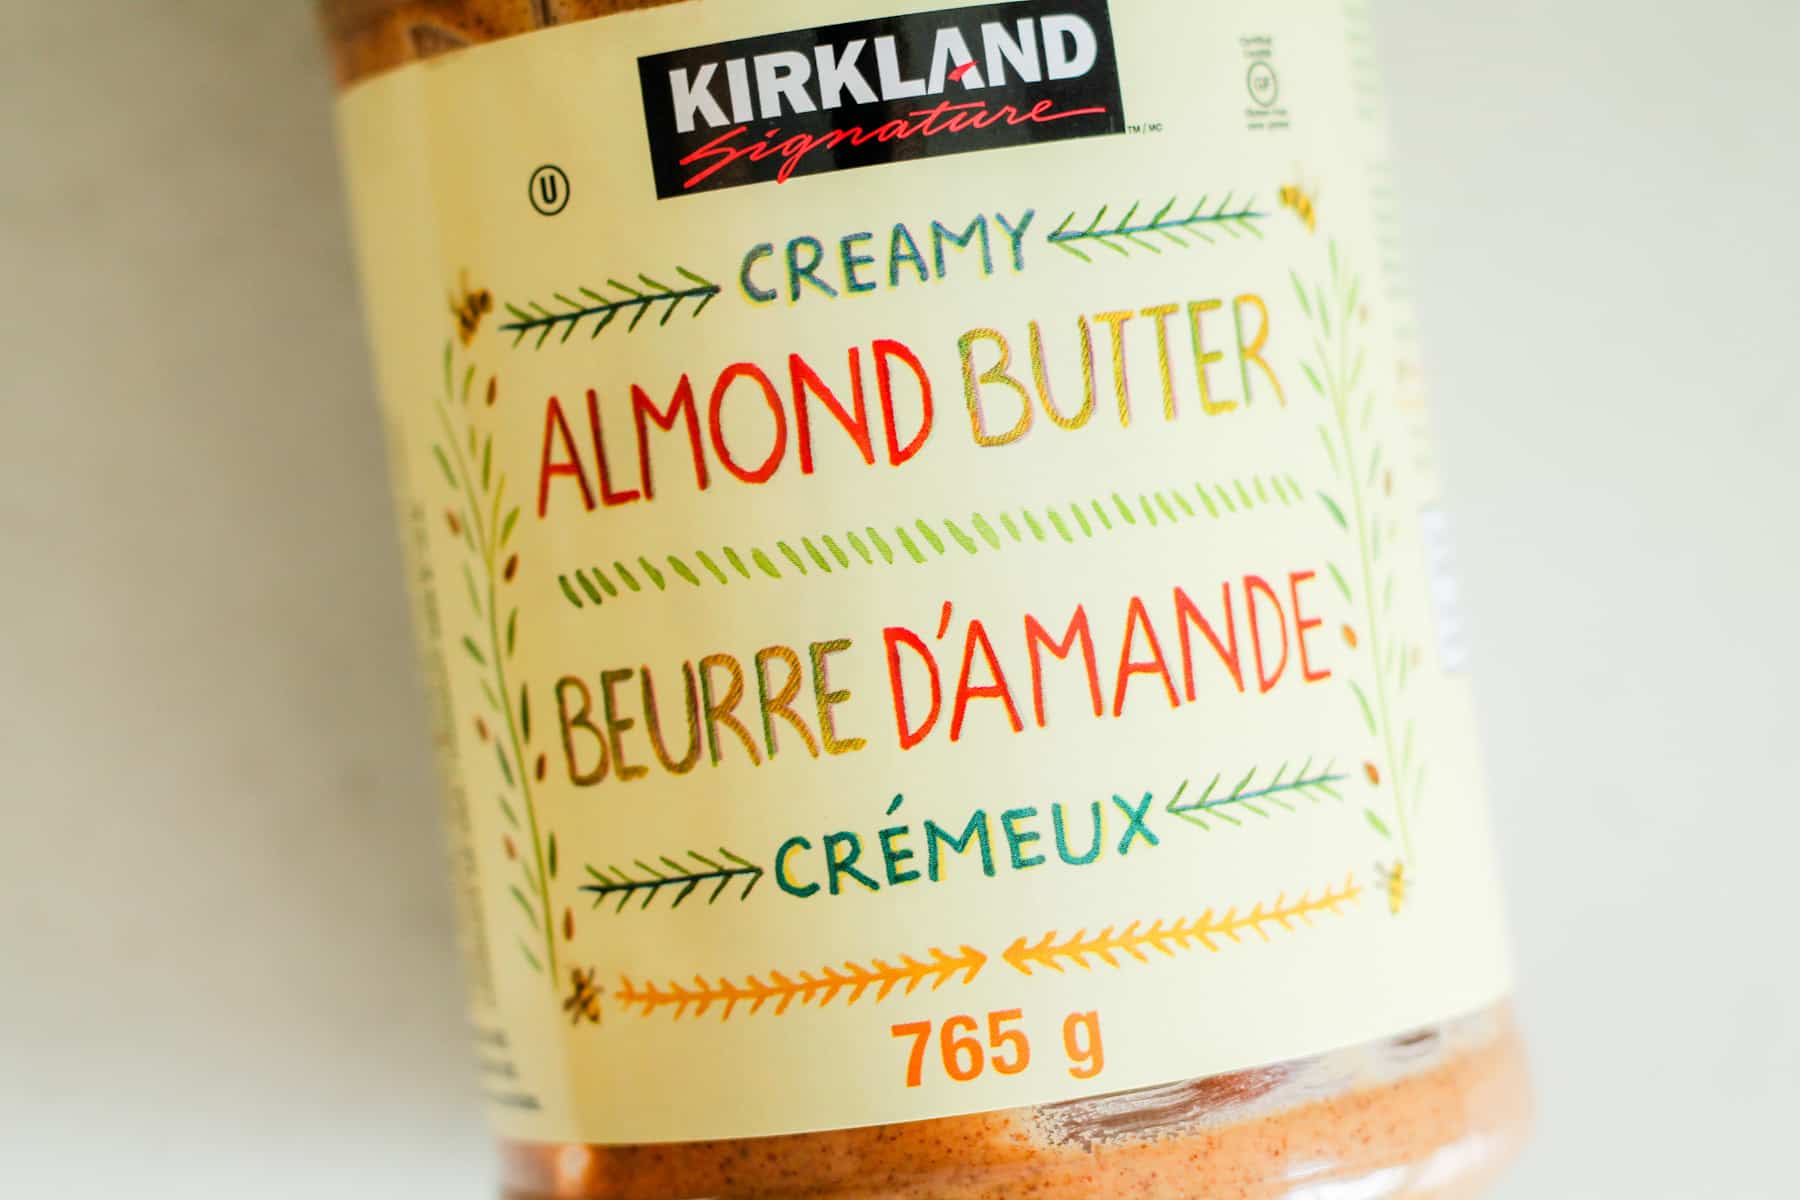 a jar of almond butter.